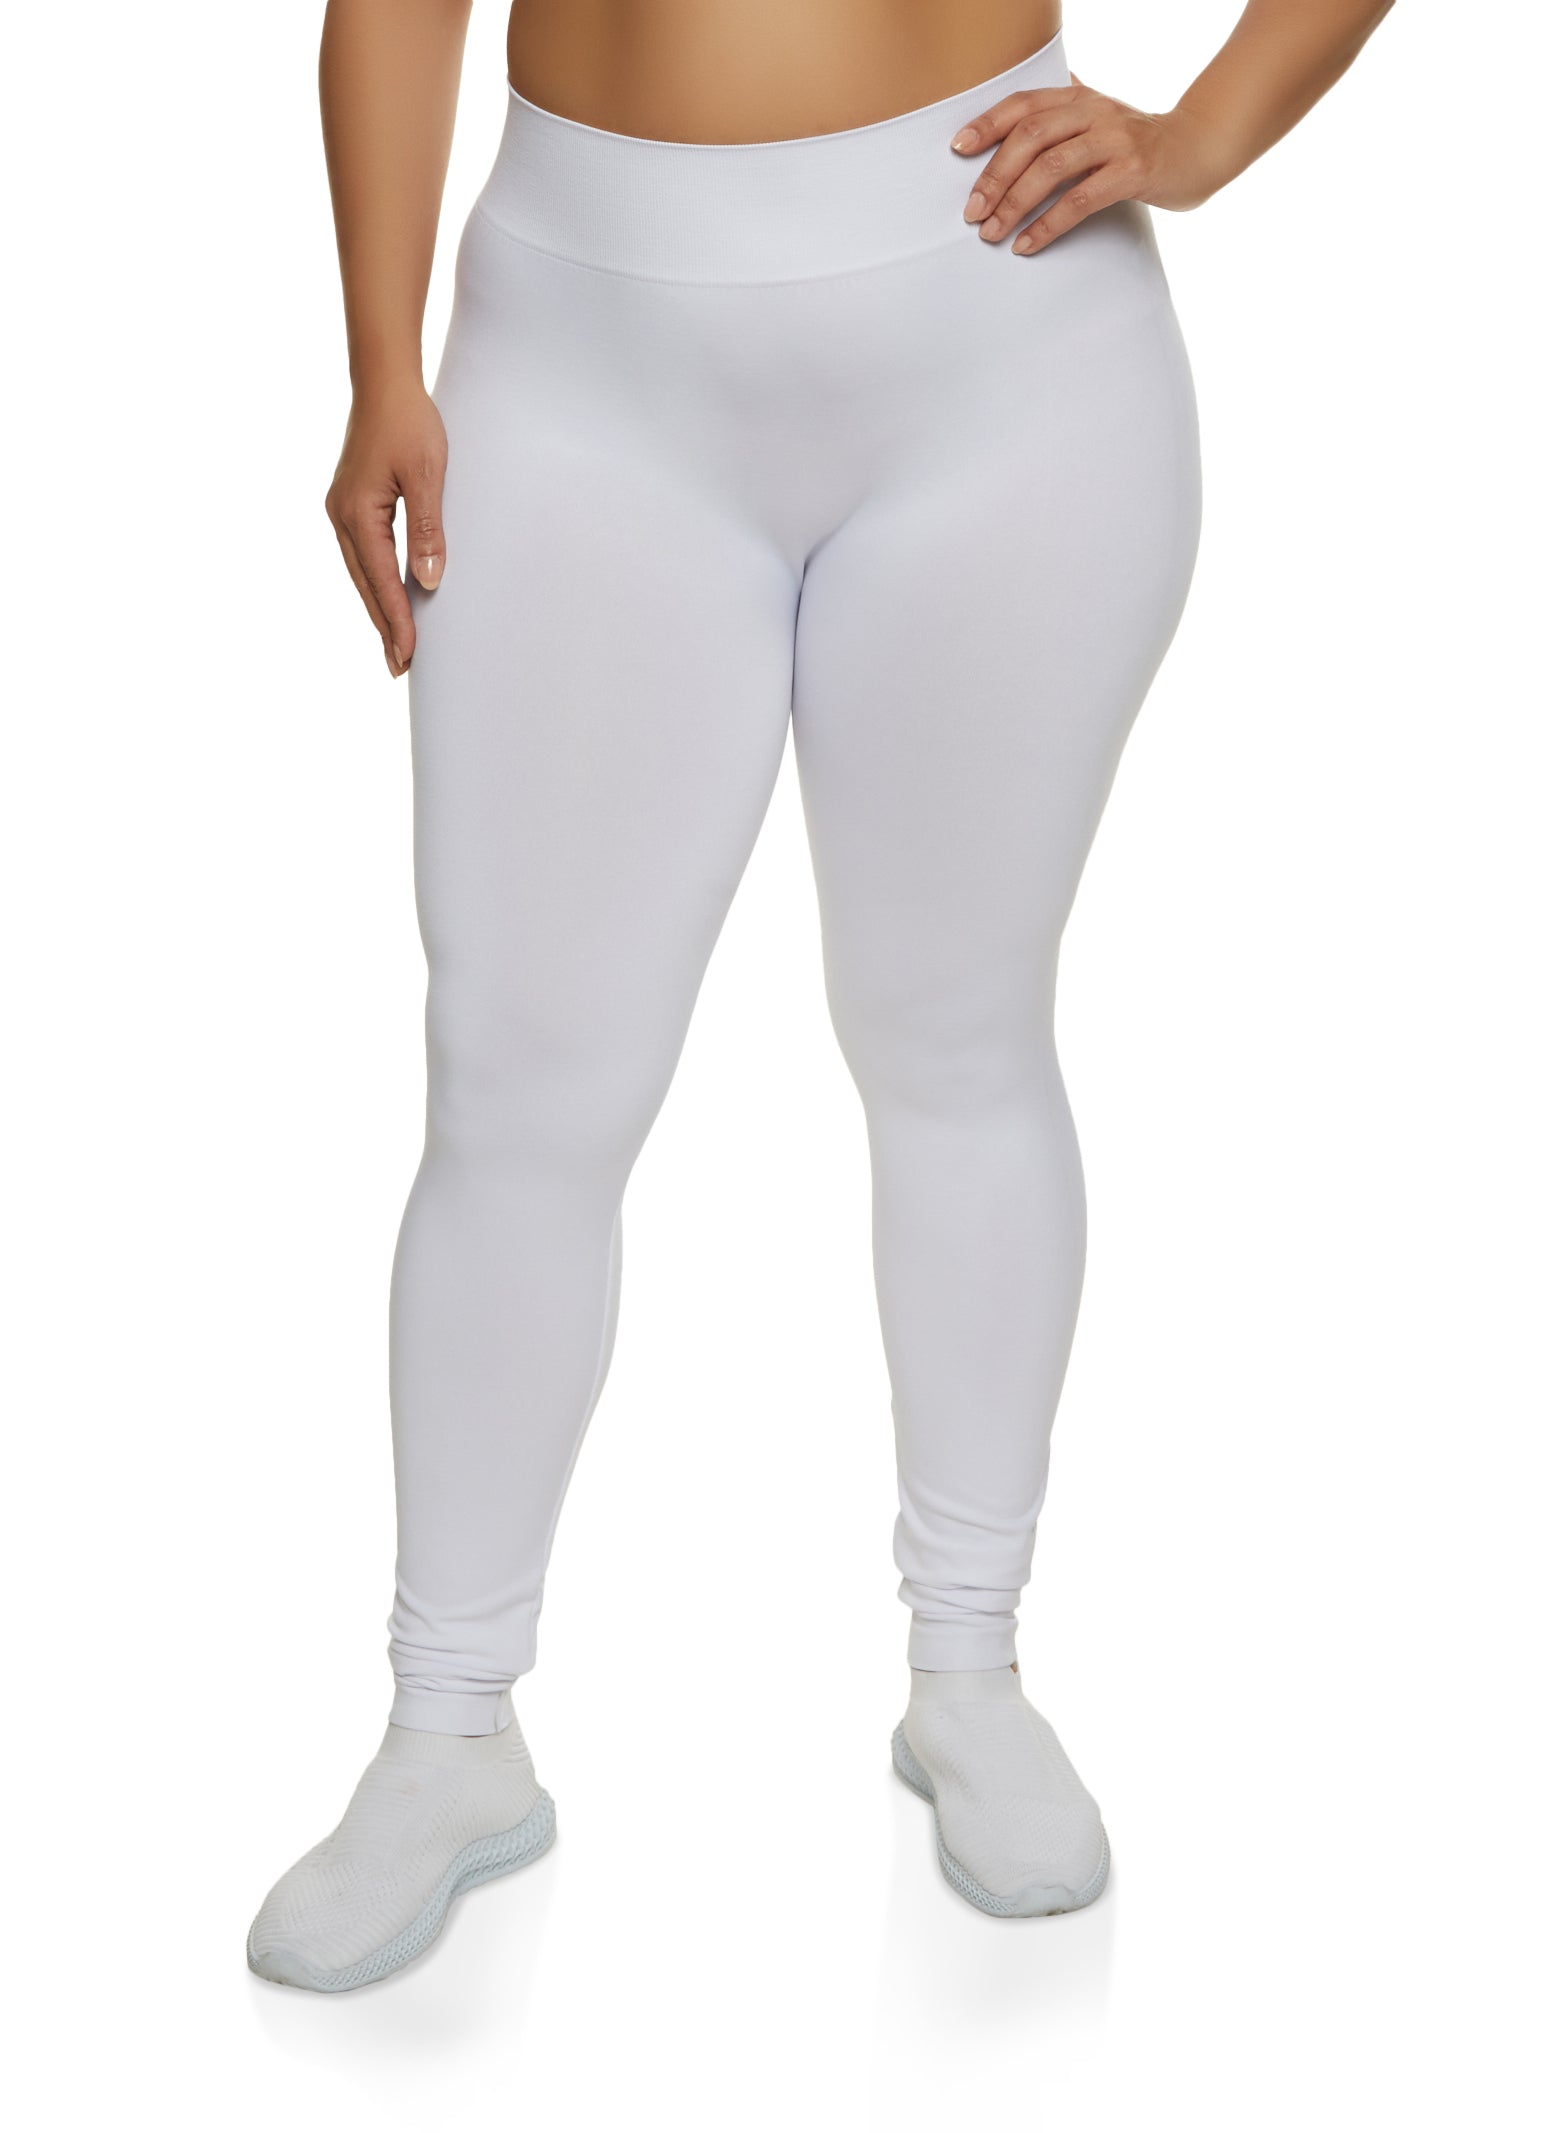 WHITE APPAREL Women's Fleece Lined Leggings (Regular & Plus Sizes) - 16  Colors